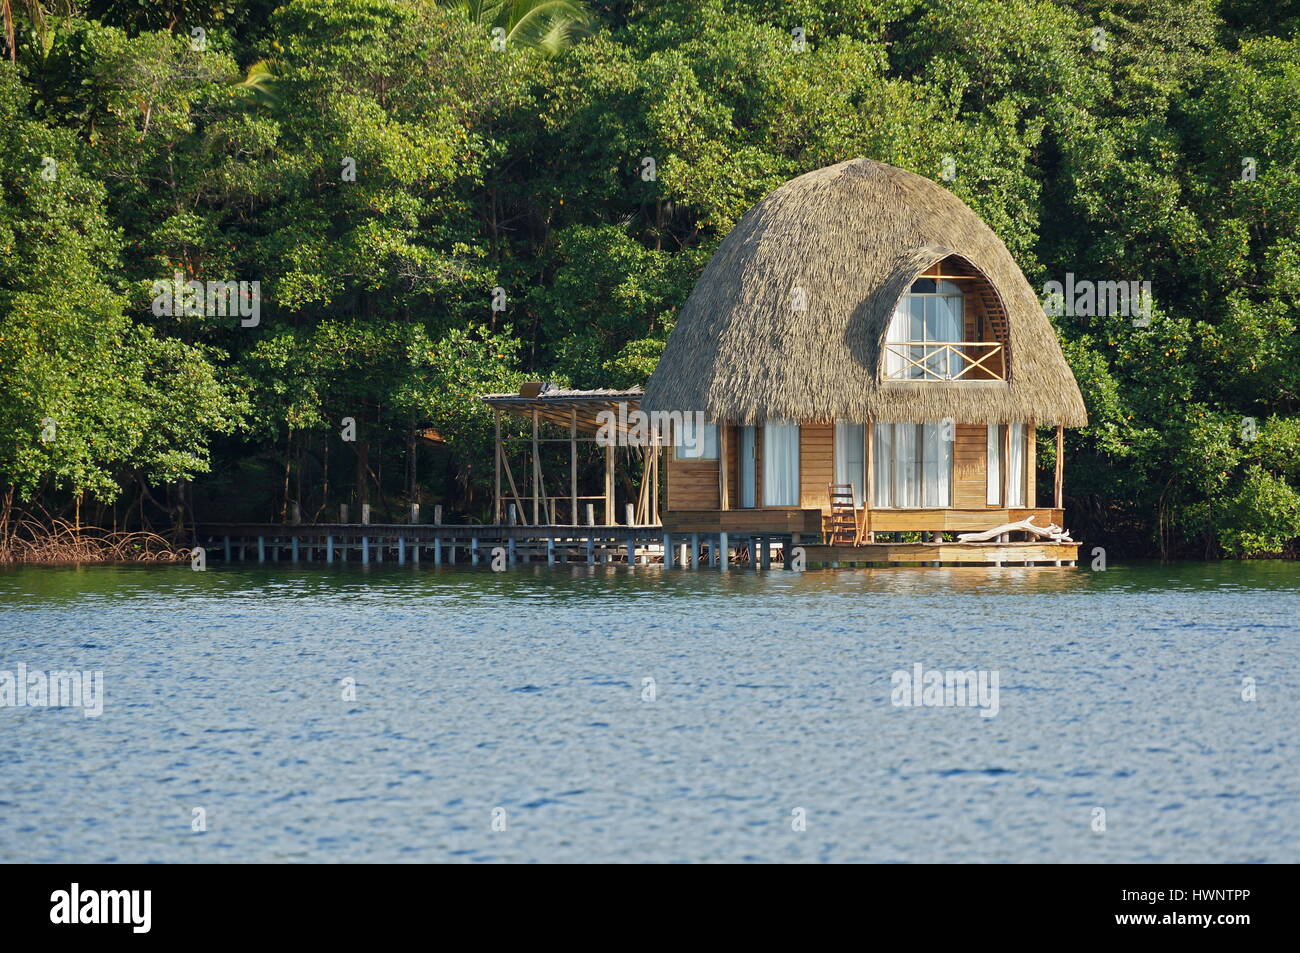 Hölzerne Overwater Bungalow mit Strohdach, tropischer Architektur, Bocas del Toro, Panama, Karibik, Mittelamerika Stockfoto